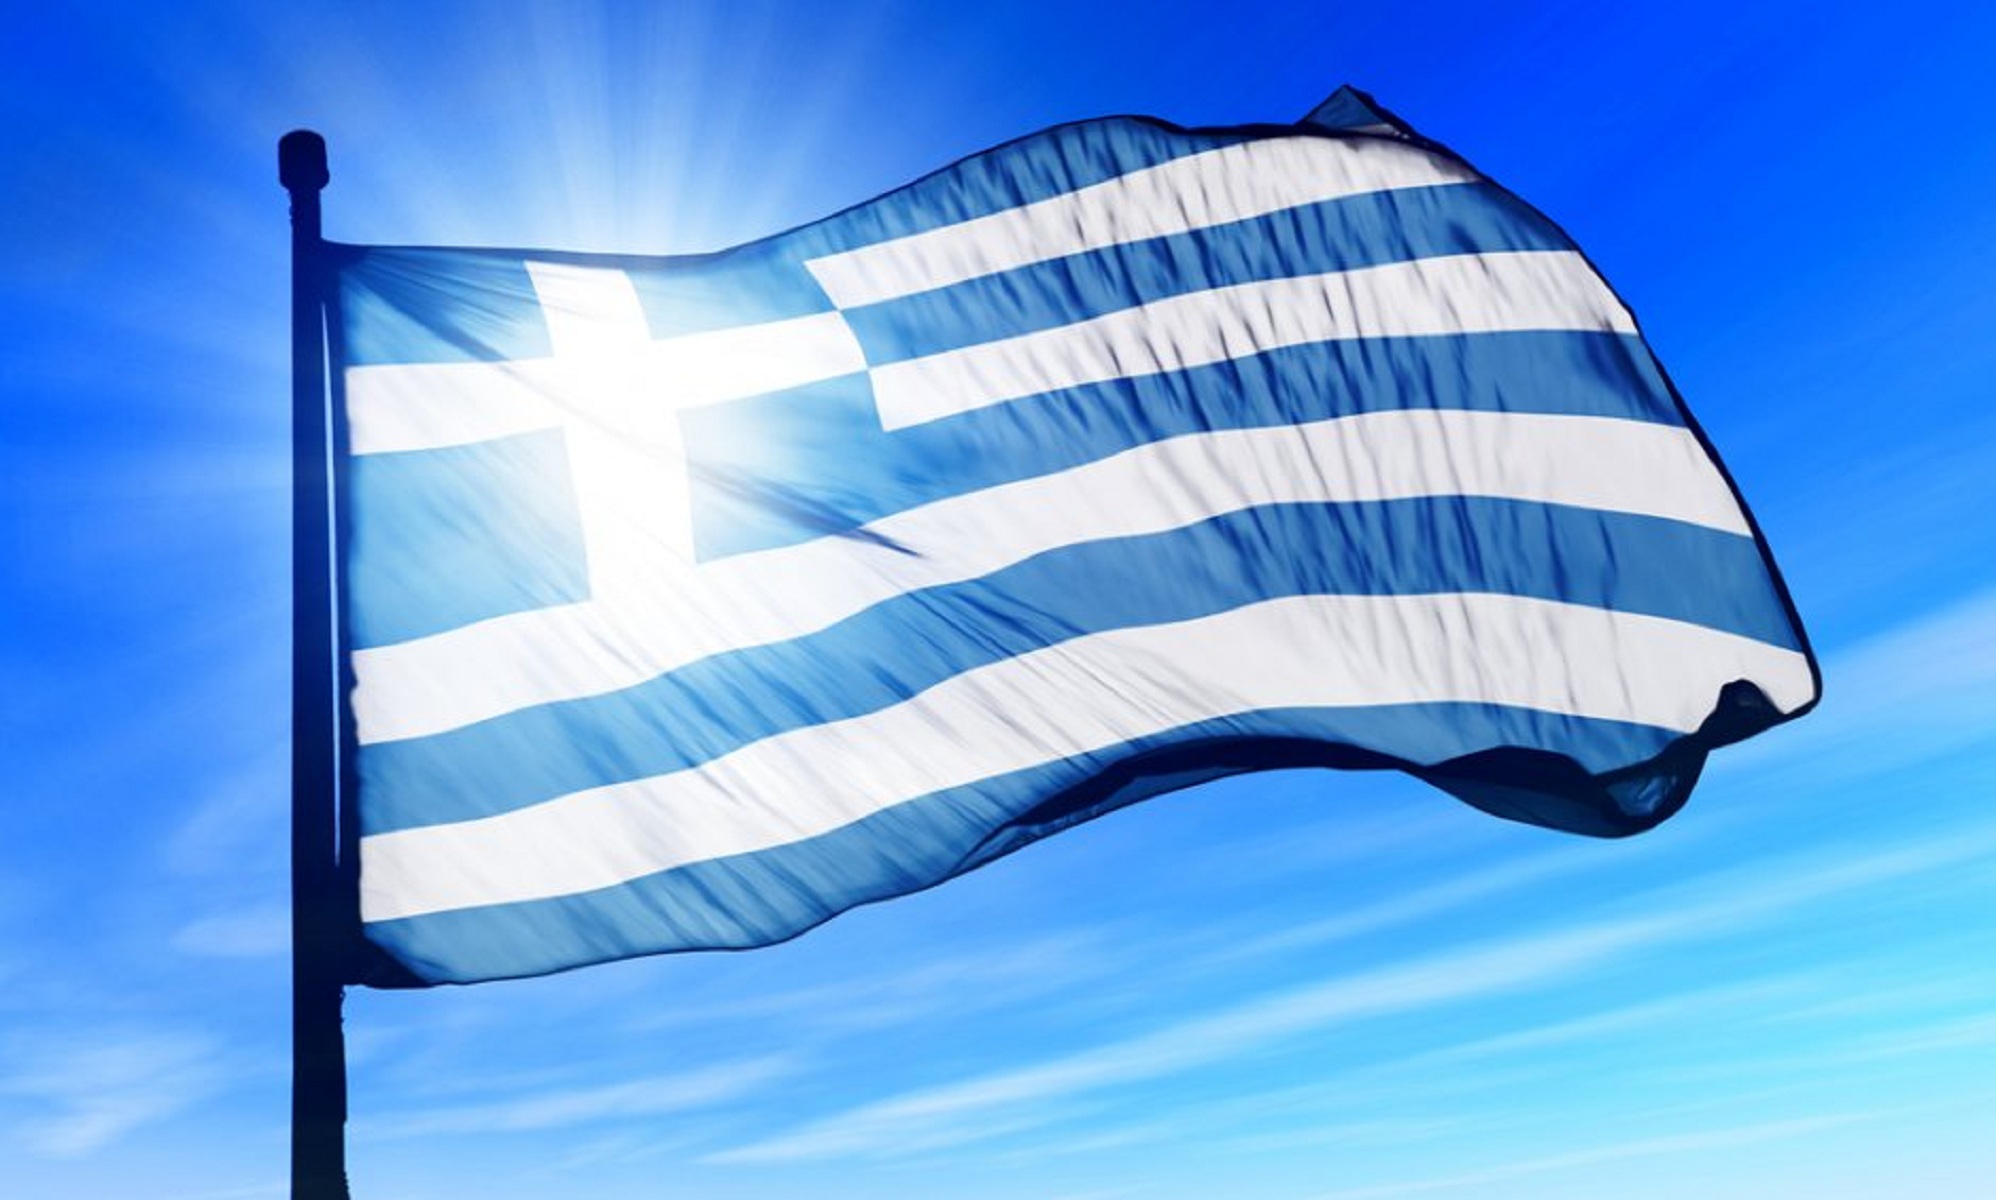 Τα έθιμα και οι παραδόσεις της 25ης Μαρτίου ανά την Ελλάδα